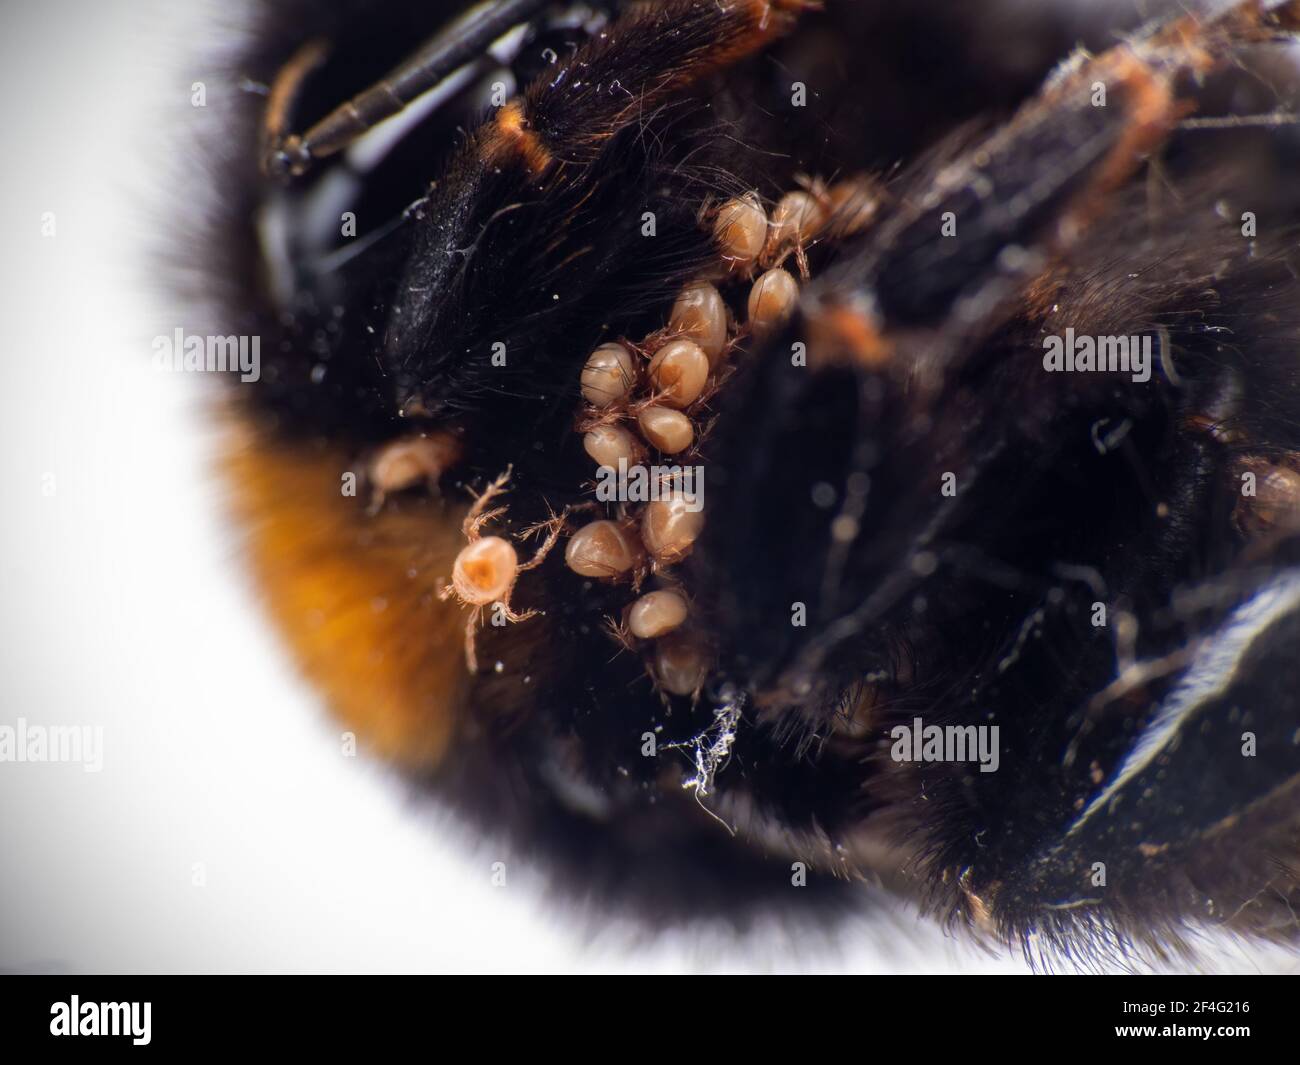 Closeup macro detail of Bombus terrestris with mites, one walking on the body. Stock Photo